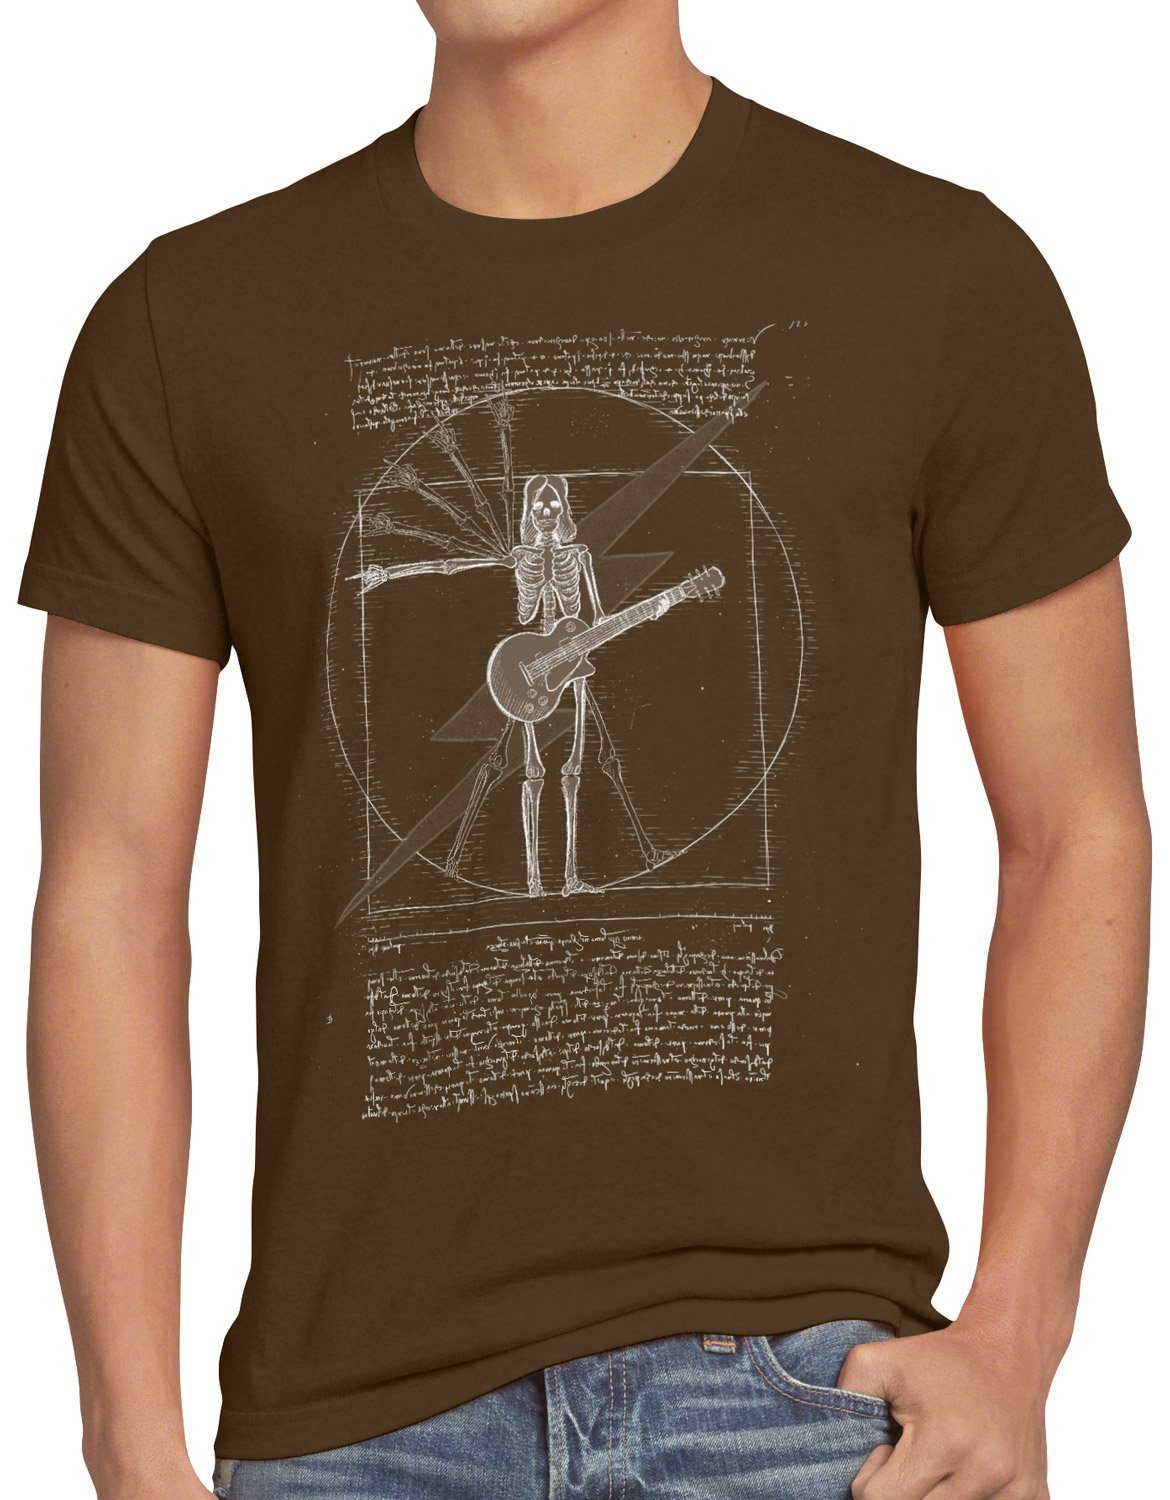 style3 Print-Shirt Herren T-Shirt DaVinci Rock musik festival vitruvianischer mensch braun | T-Shirts